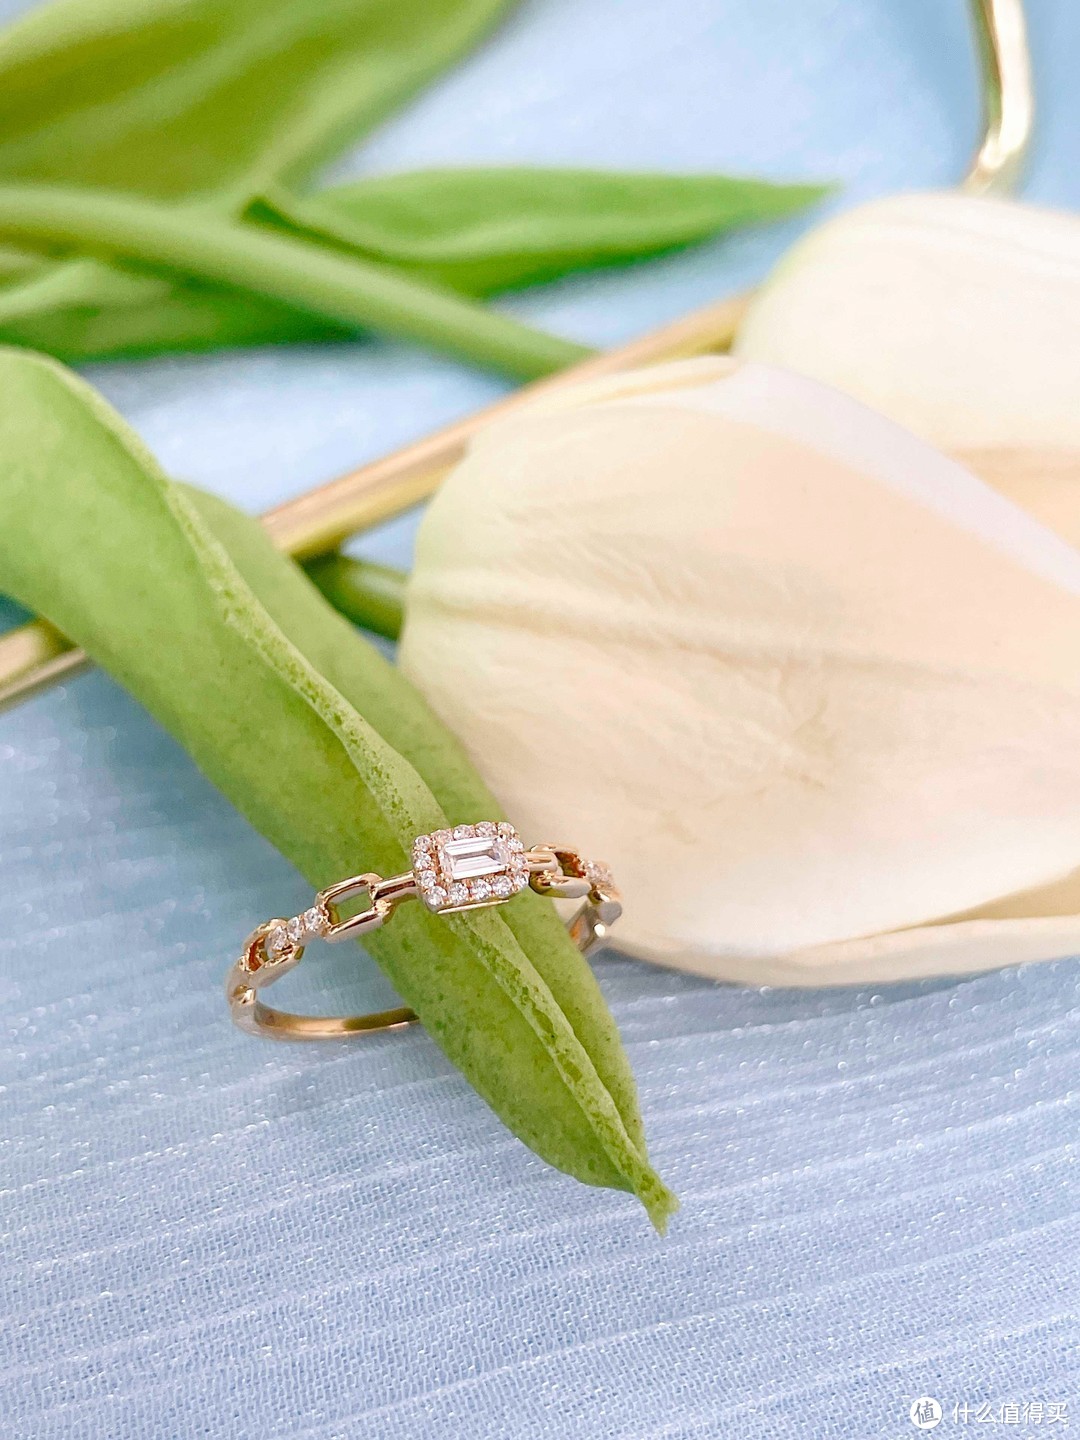 【求婚必备】六福珠宝彩金钻戒，质感满分、颜值爆表！